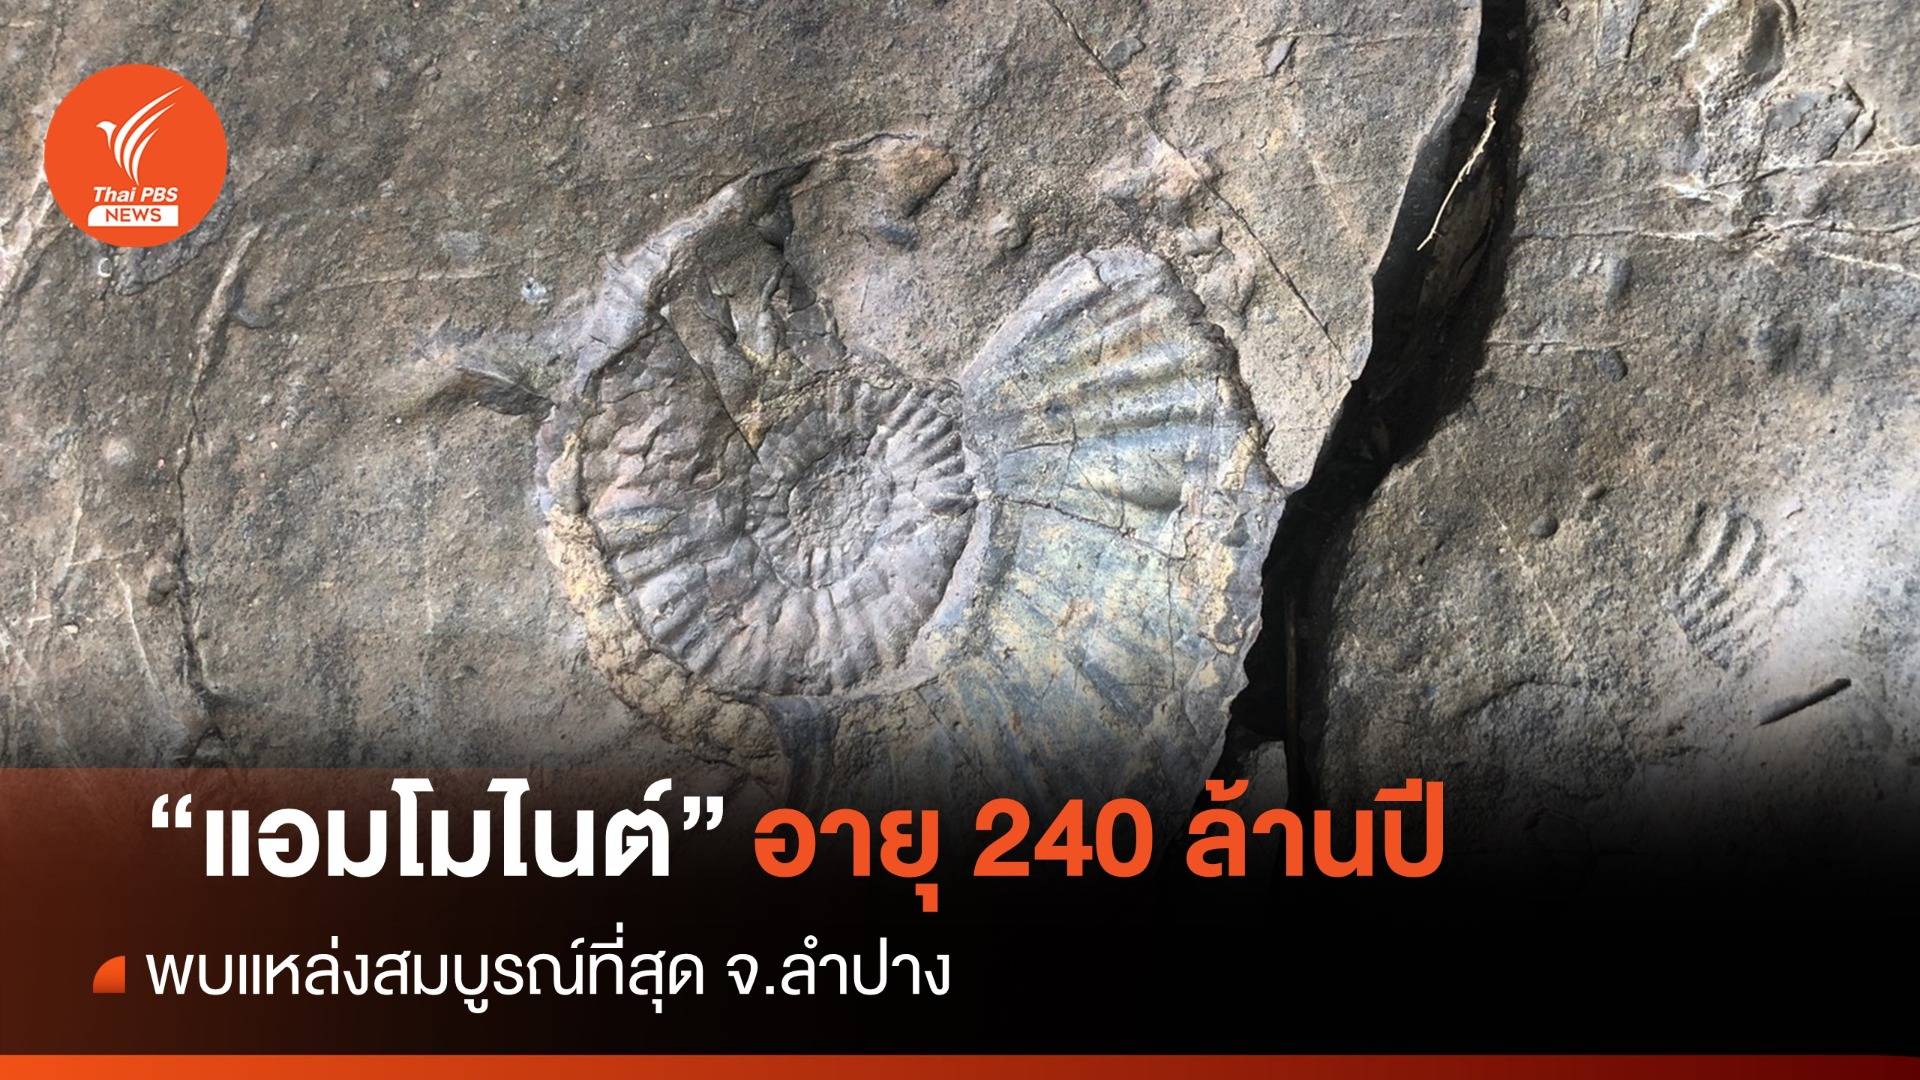 ตื่นตา! "แอมโมไนต์" บนชั้นหินอายุ 240 ล้านปีสมบูรณ์สุดในไทย